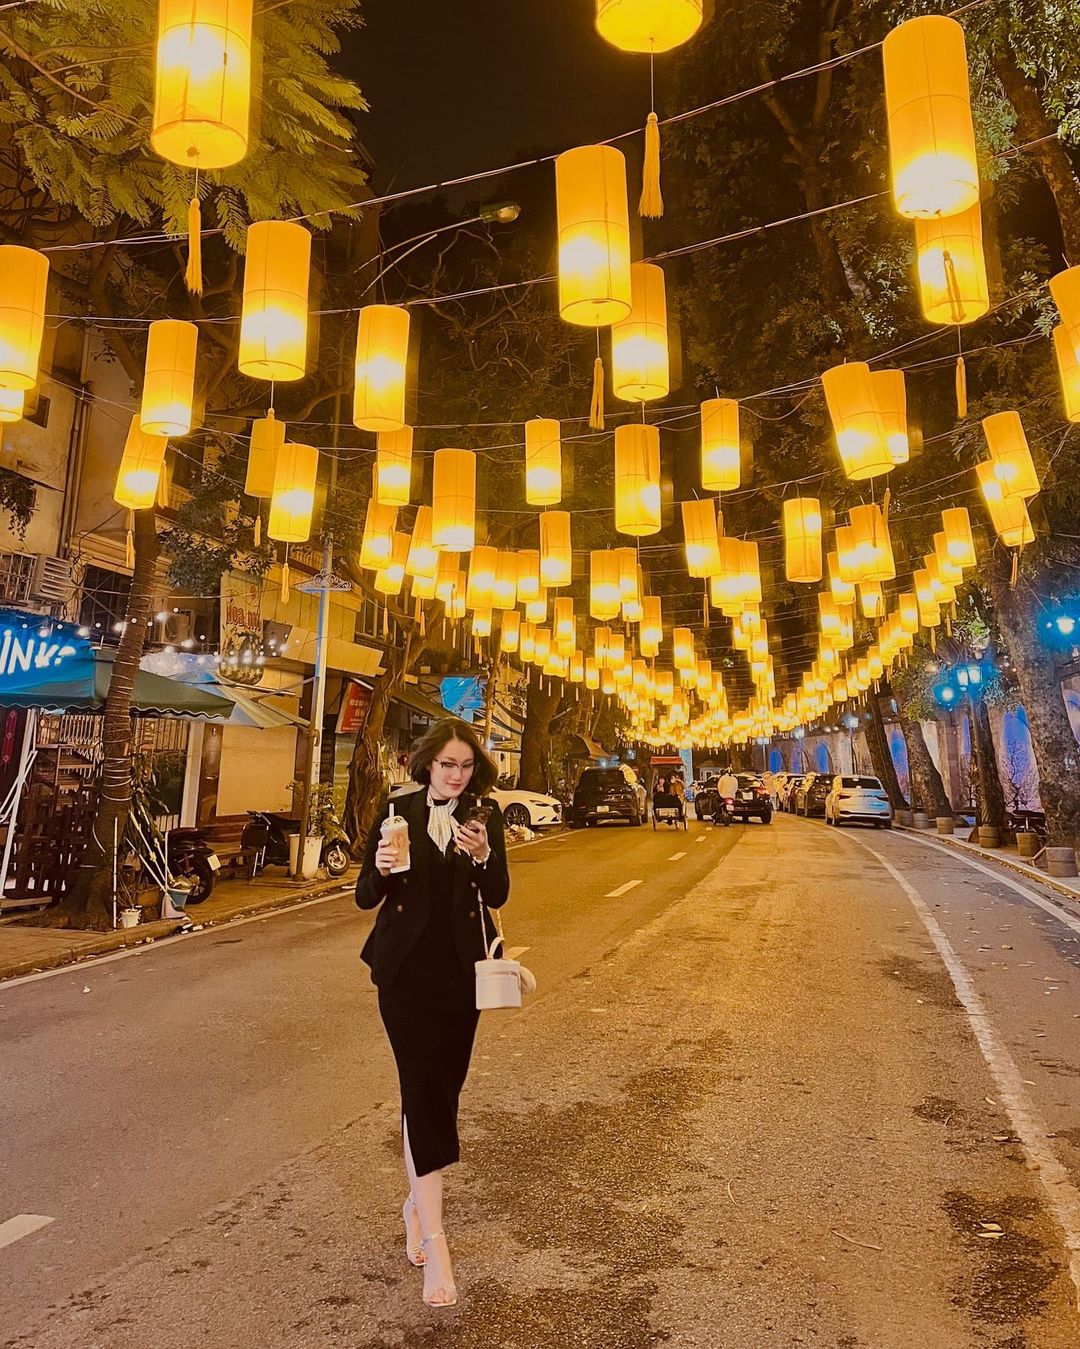 Buổi tối, phố bích họa Phùng Hưng được tô điểm bởi những chiếc đèn lồng rực rỡ.